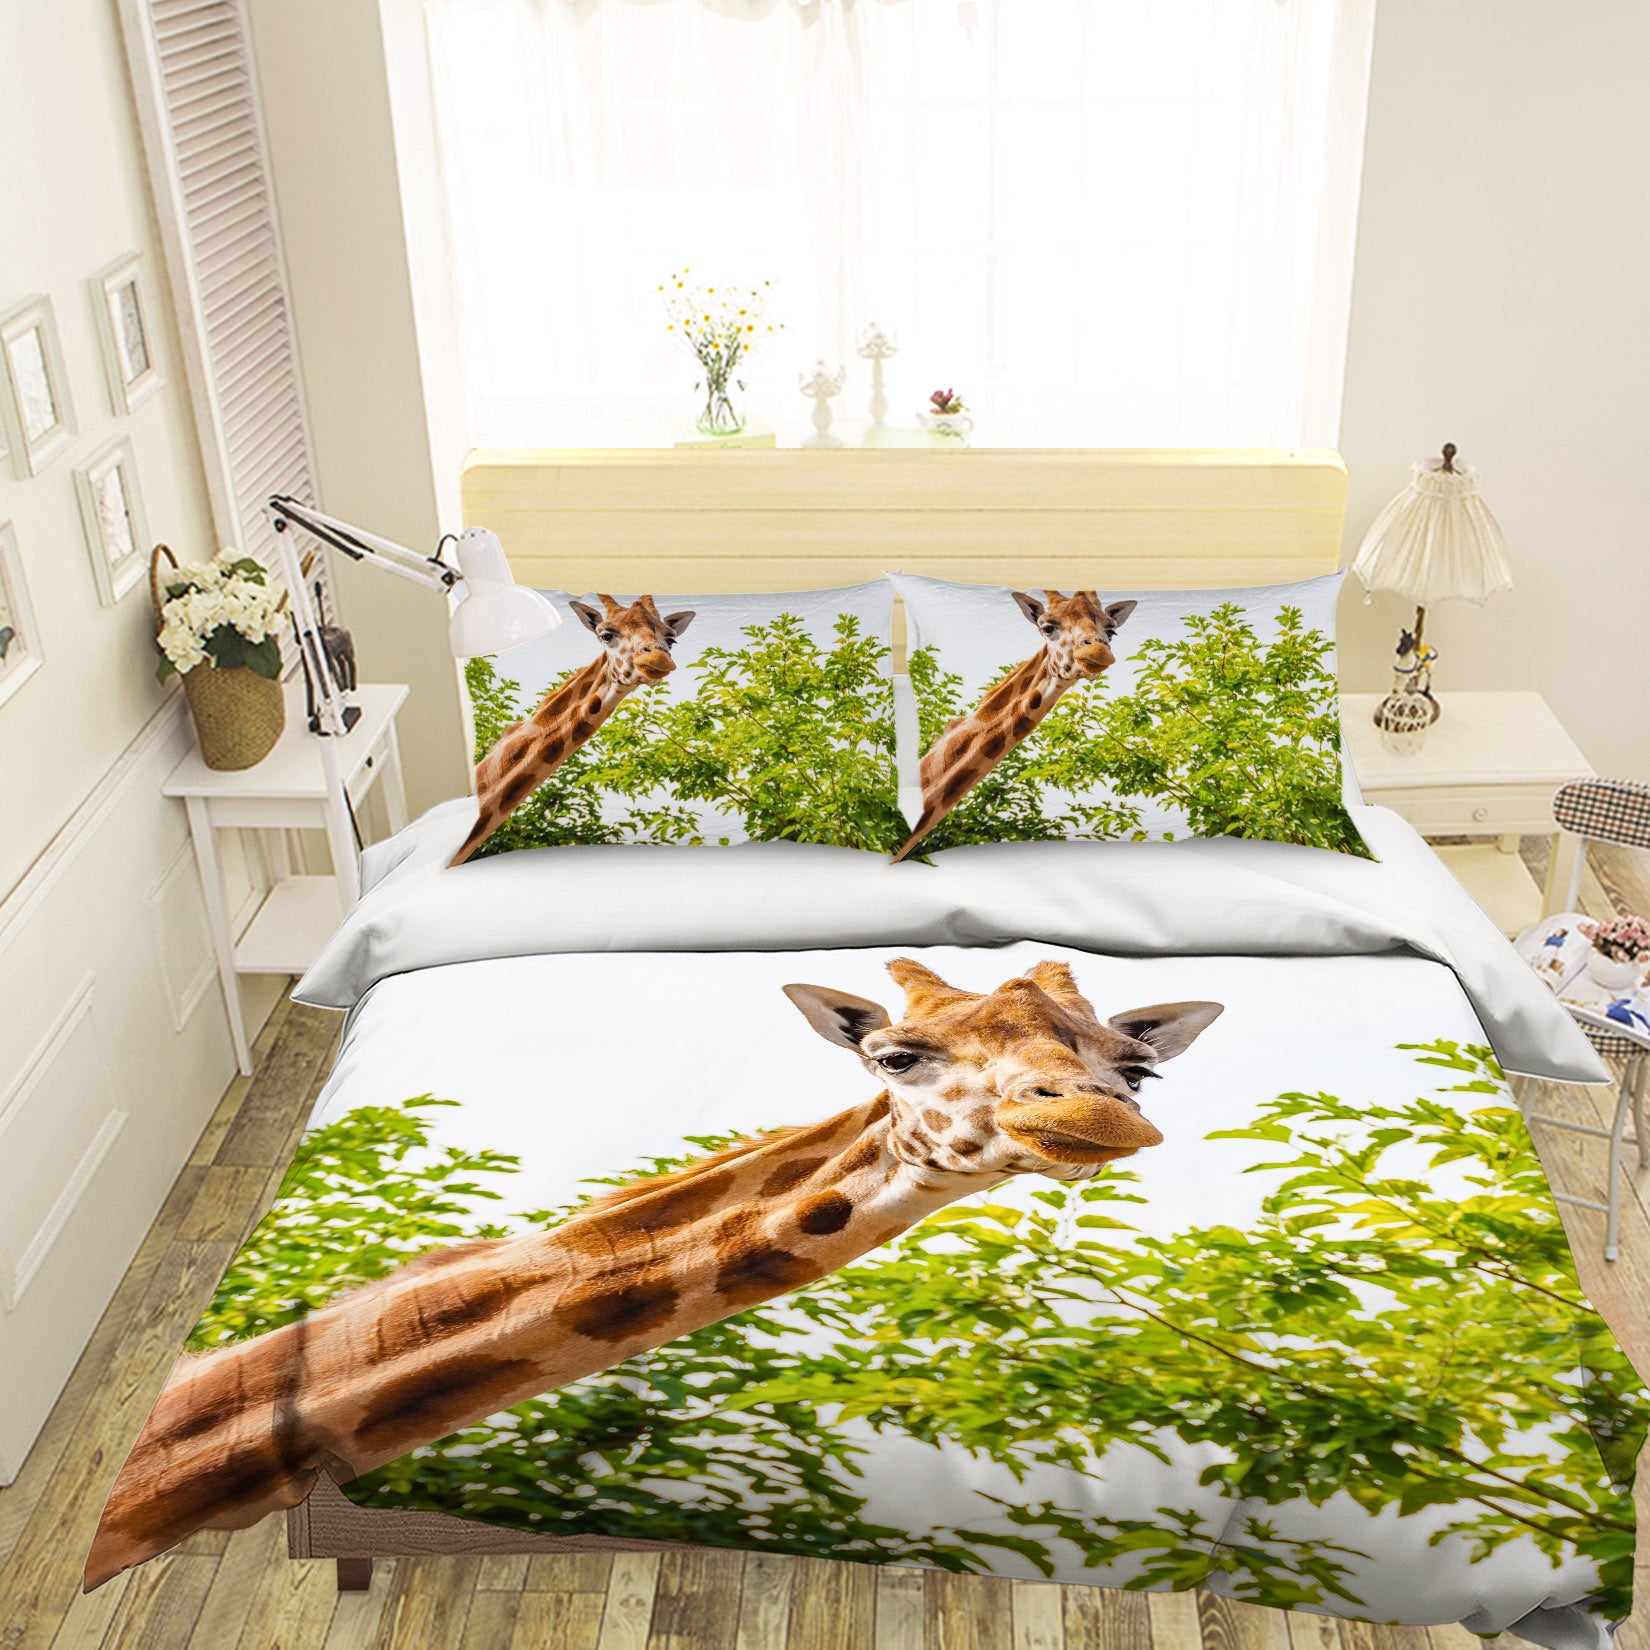 3D Giraffe Tree 129 Bed Pillowcases Quilt